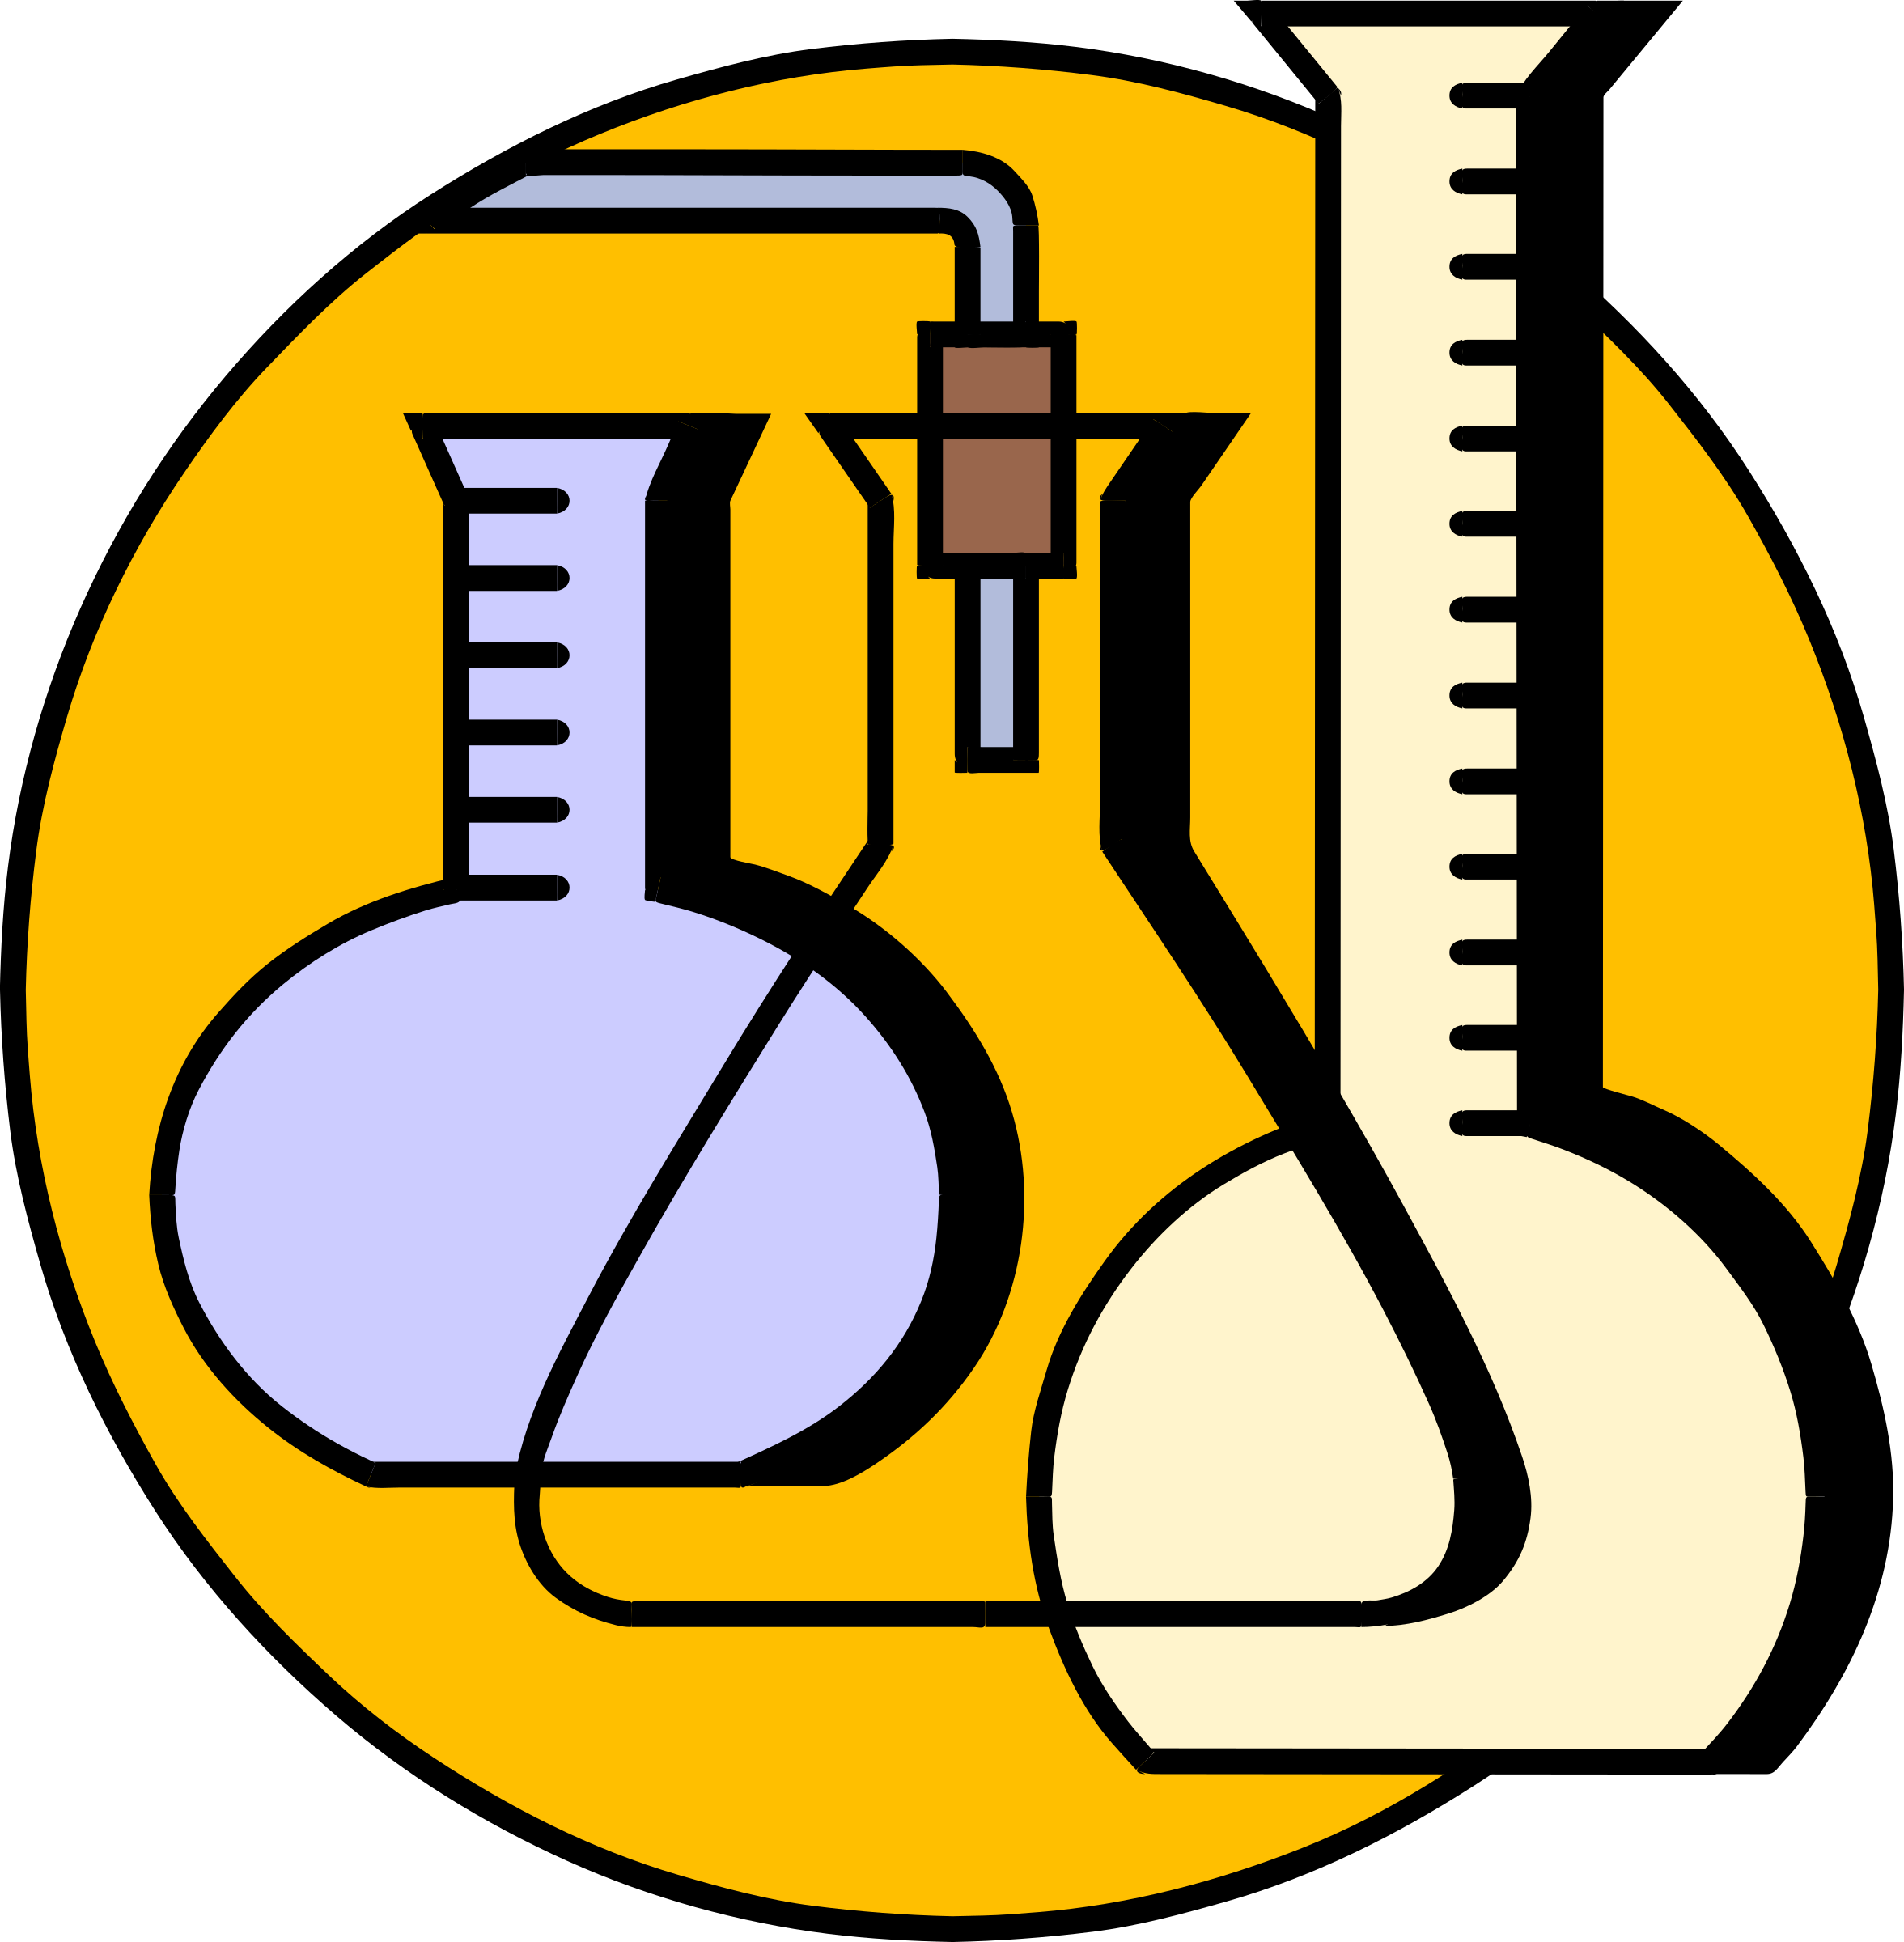 Лабораторные предметы по физике. Химическая эмблема. Символ химии. Химия логотип. Эмблема кабинета химии.